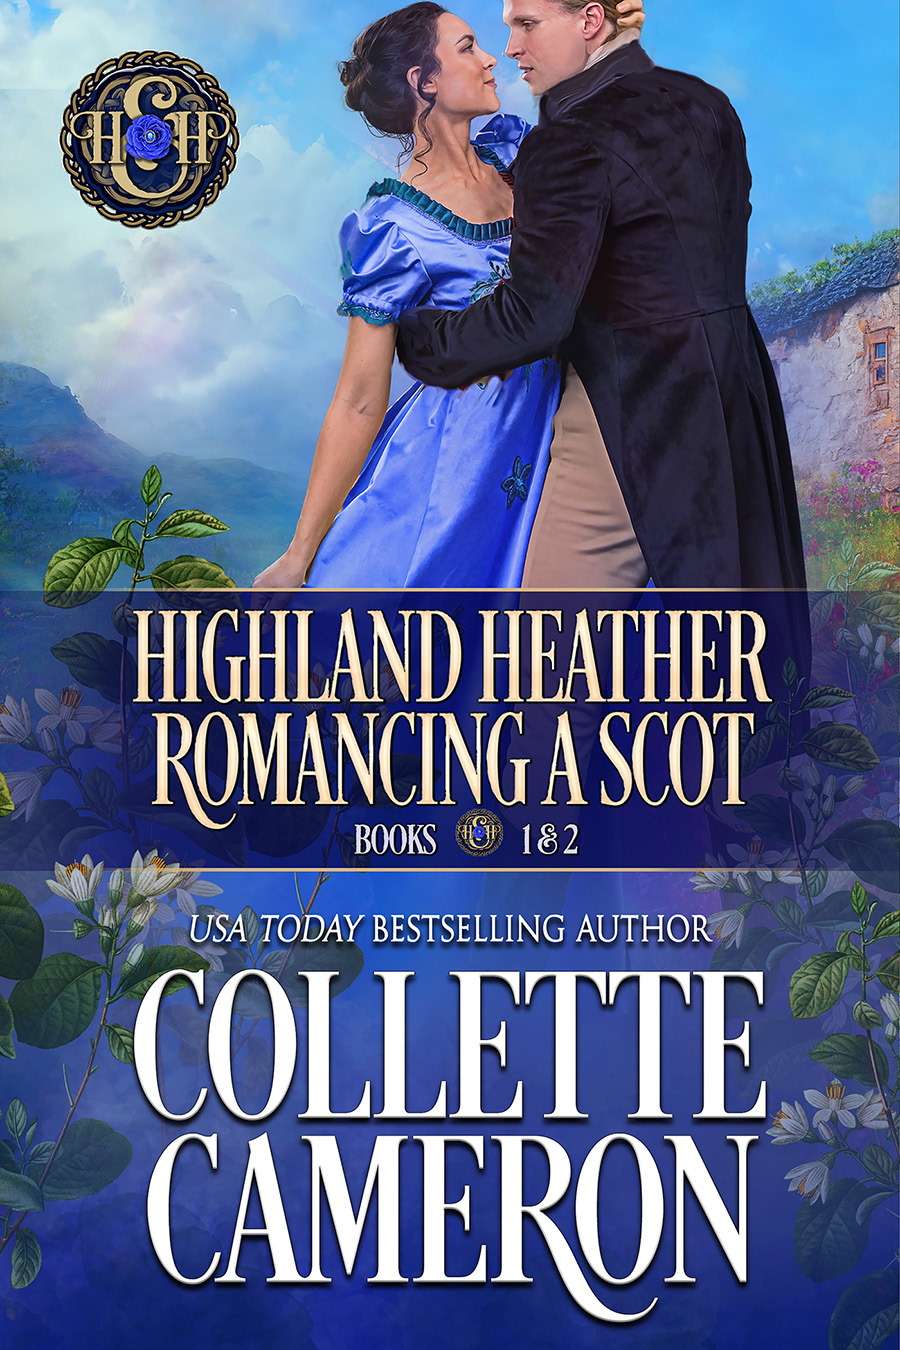 Collette's Historical Romances 7